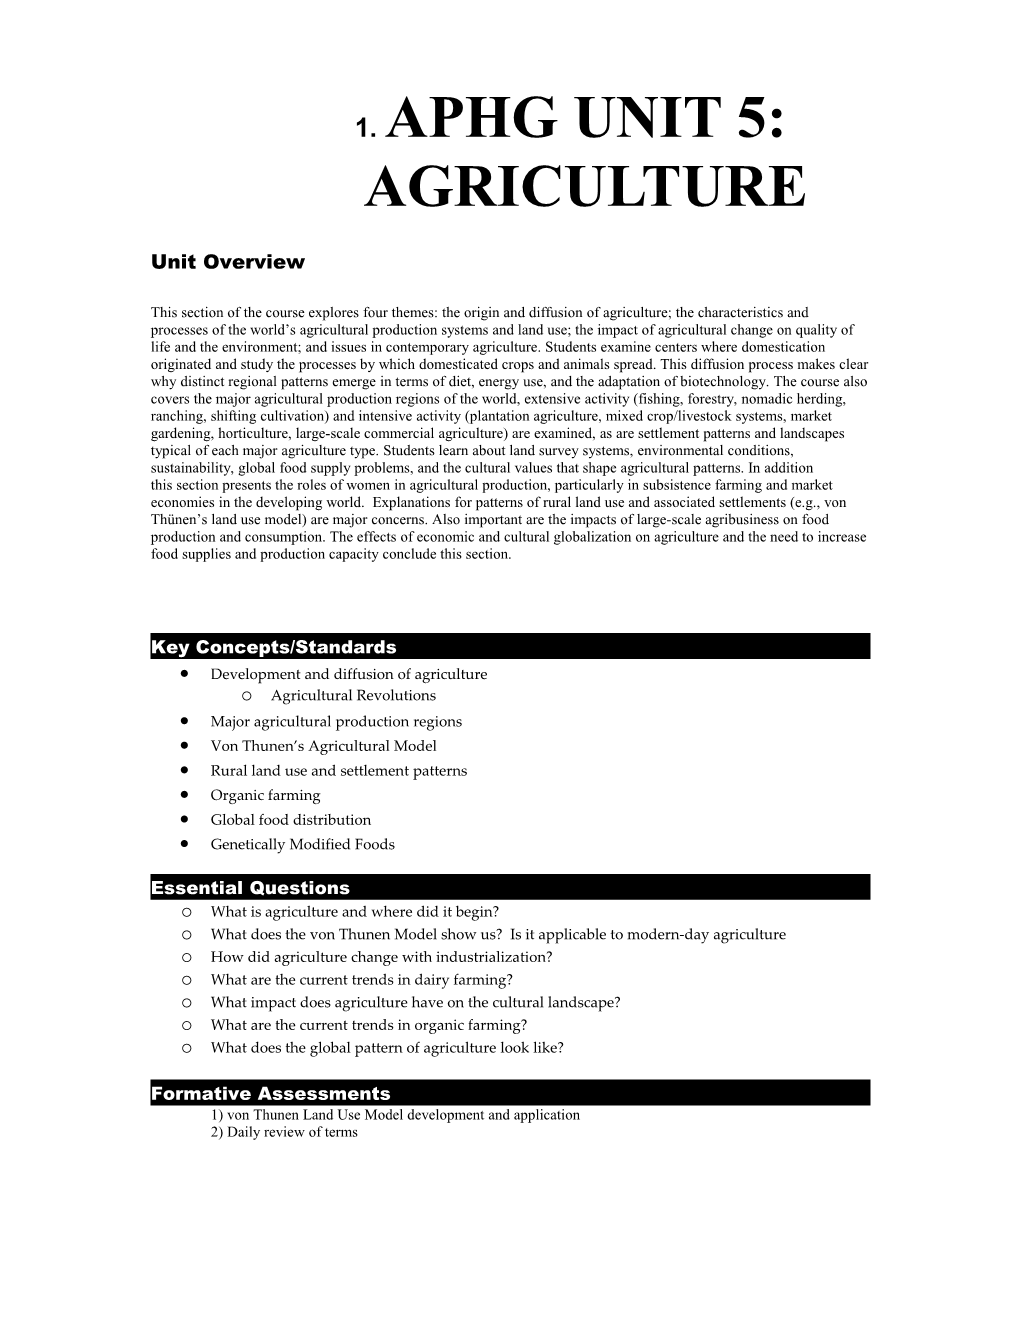 Aphg Unit 5: Agriculture